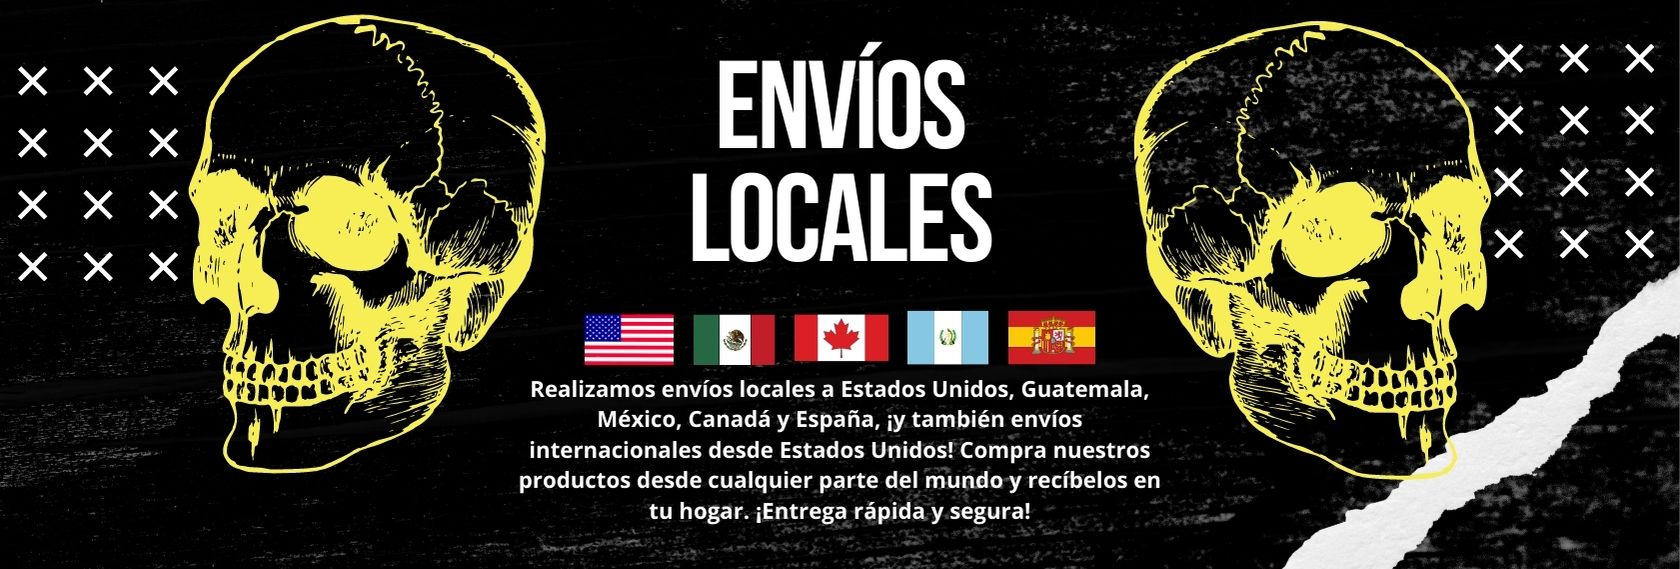 Realizamos envíos locales a Estados Unidos, Guatemala, México, Canadá y España, ¡y también envíos internacionales desde Estados Unidos! Compra nuestros productos desde cualquier parte del mundo y recíbelos en tu hogar. ¡Entrega rápida y segura!